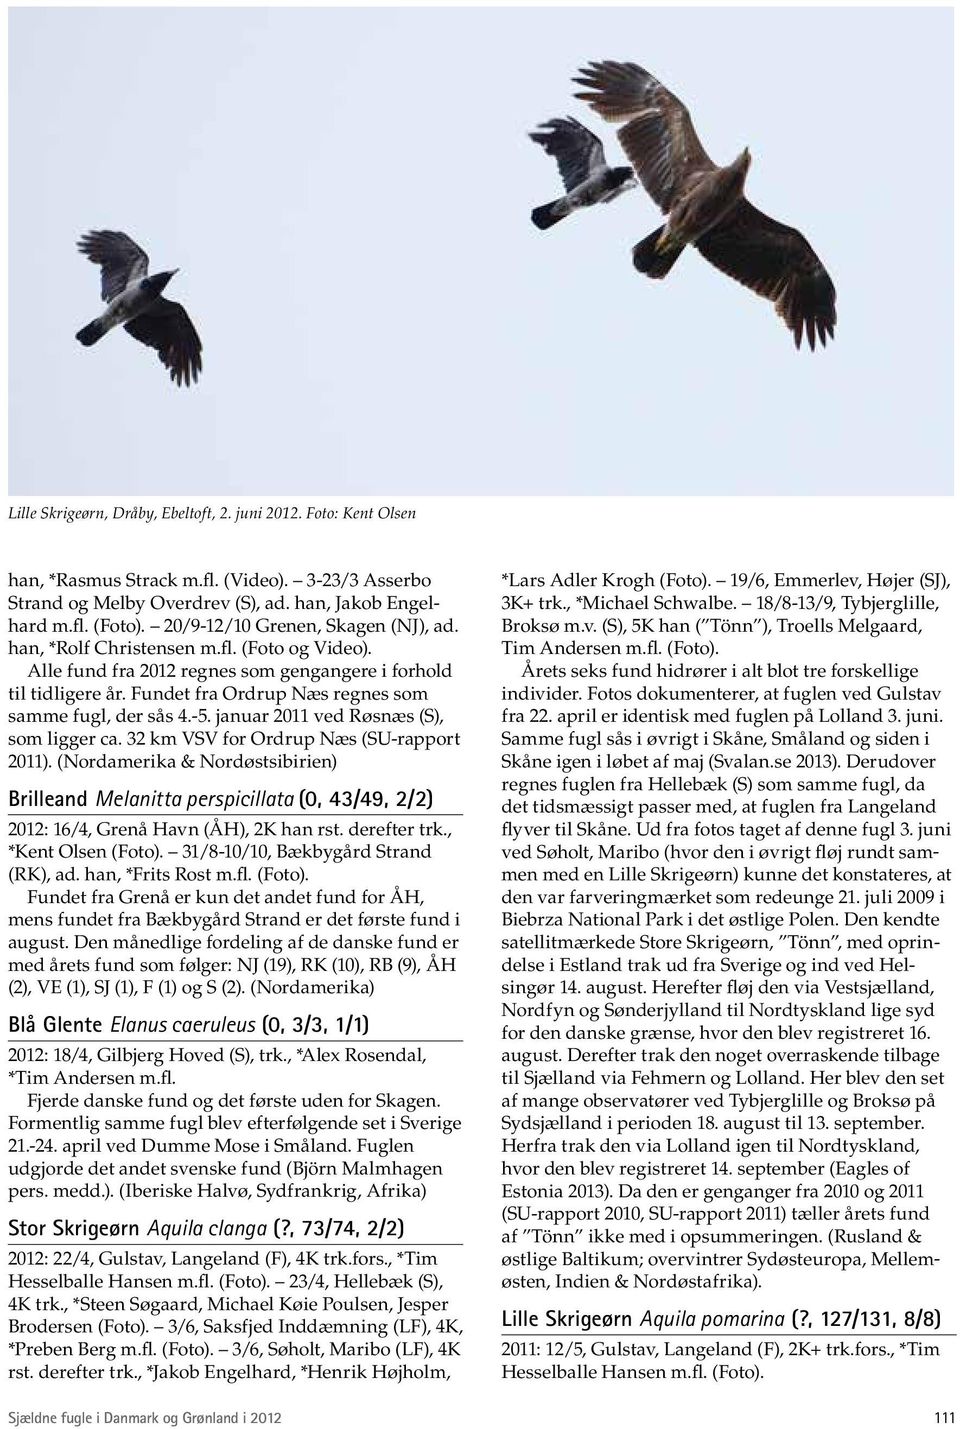 Fundet fra Ordrup Næs regnes som samme fugl, der sås 4.-5. januar 2011 ved Røsnæs (S), som ligger ca. 32 km VSV for Ordrup Næs (SU-rapport 2011).